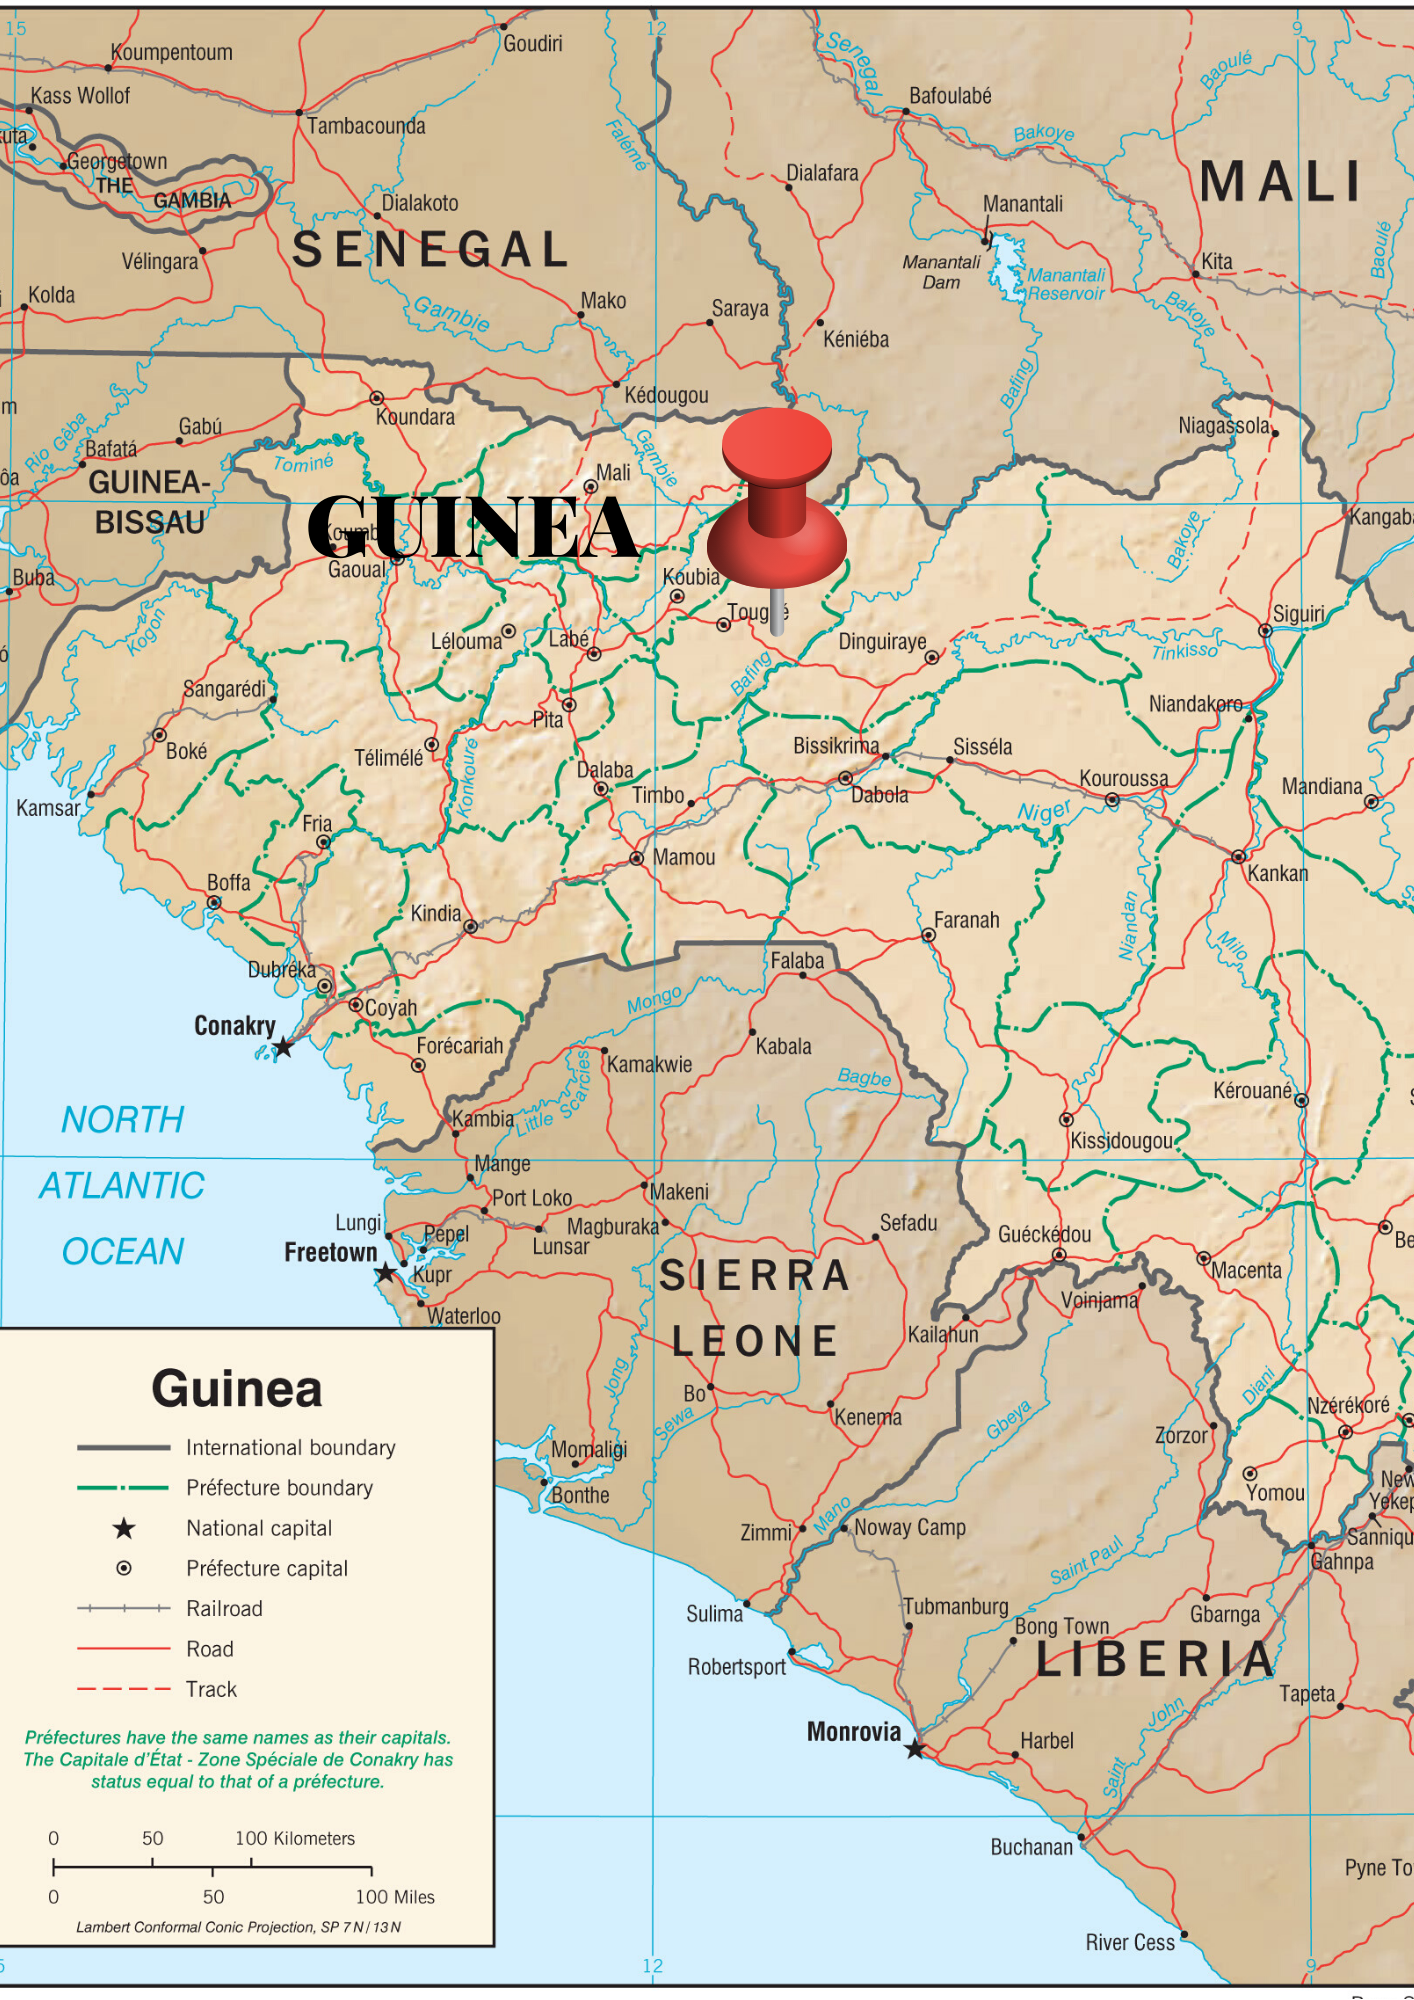 conakry_mapa_lib-2.png